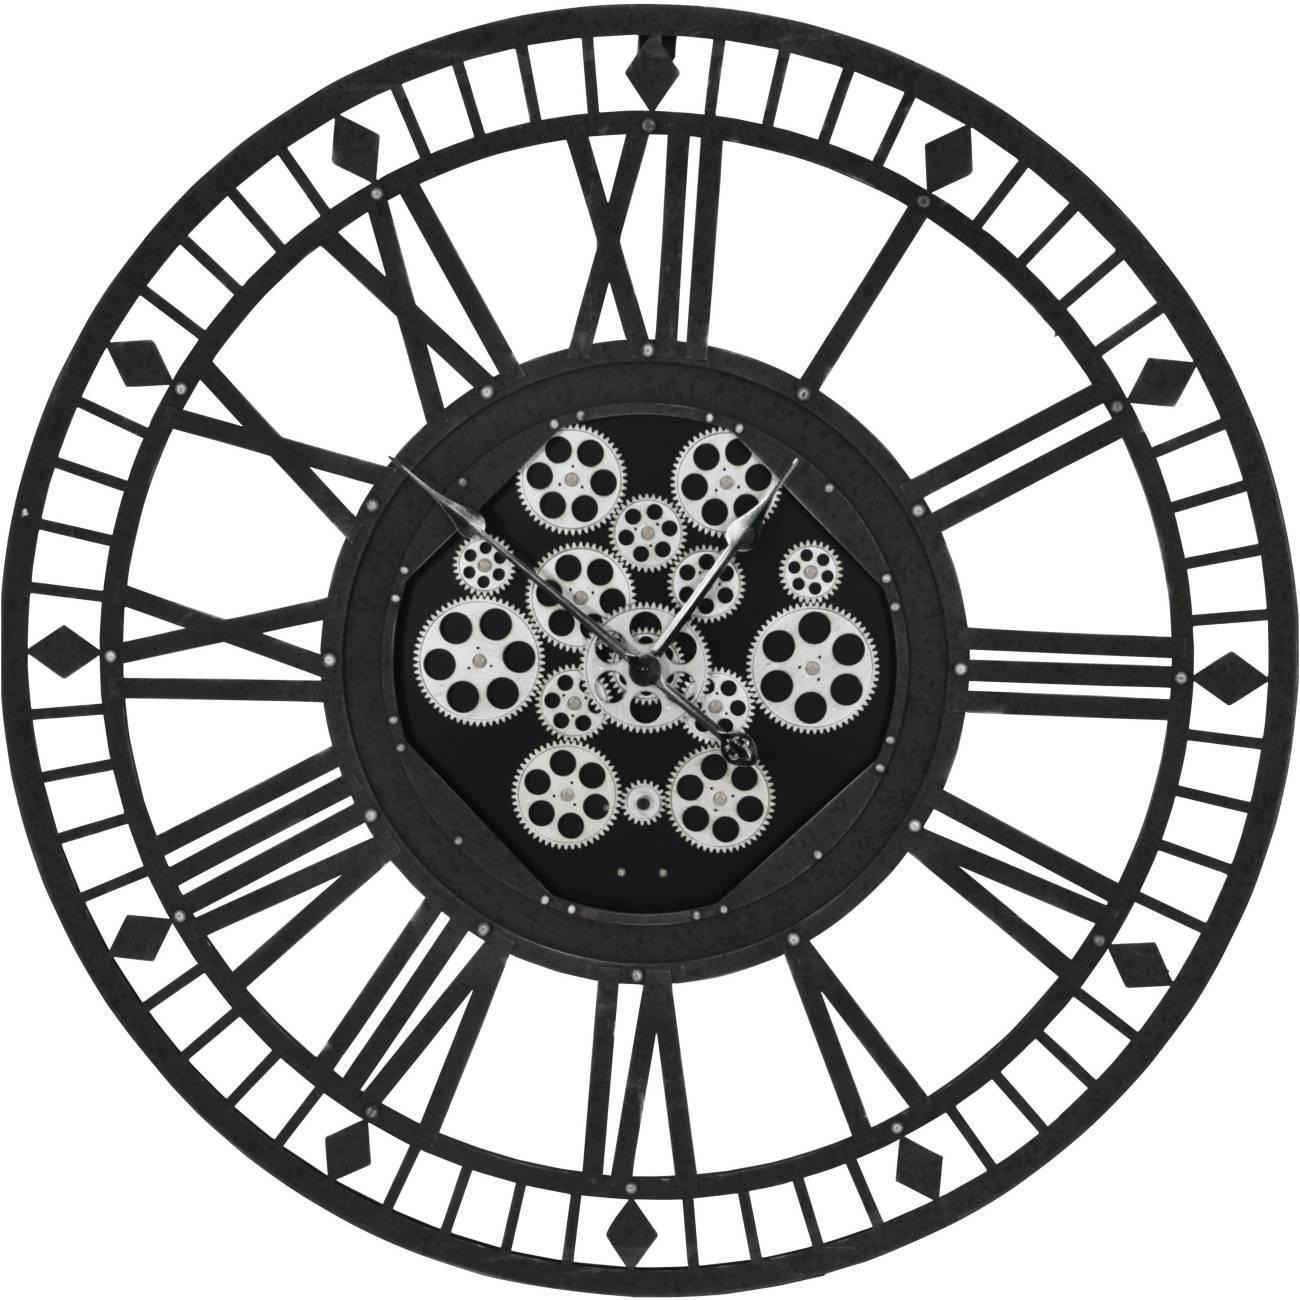 Gibbons grey skeleton 90cm moving cog clock - image 1